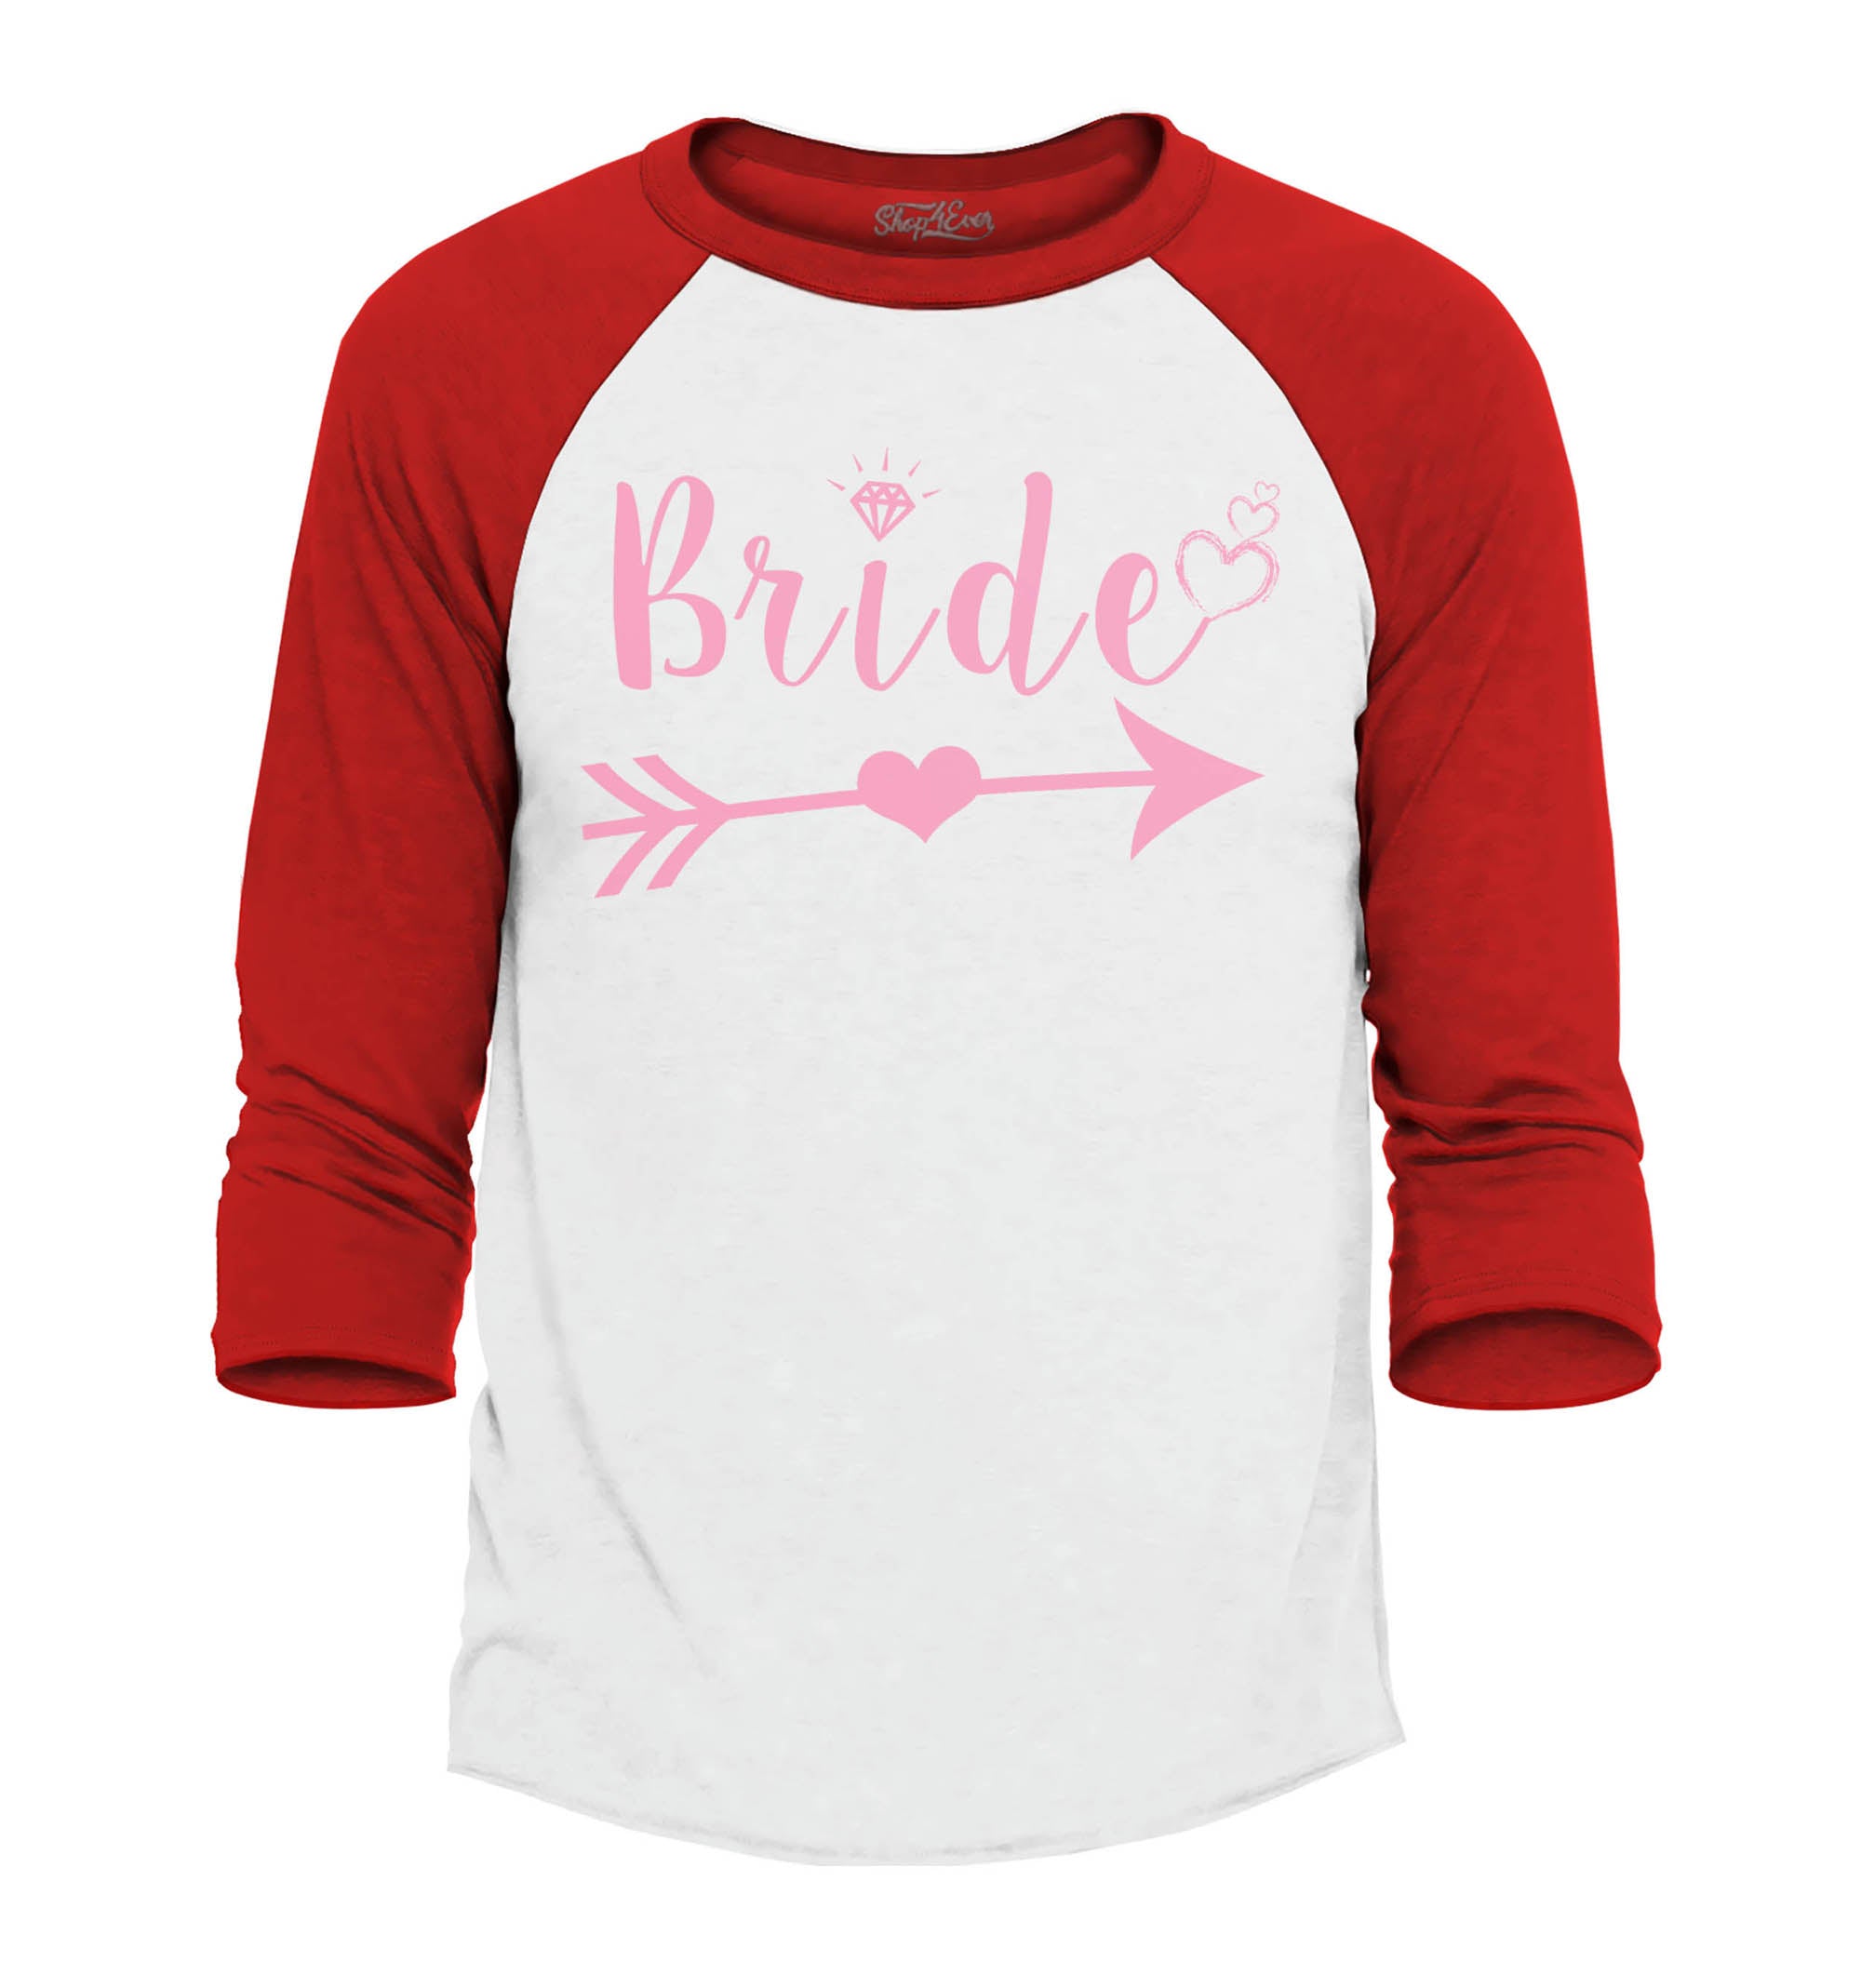 Bride Pink Heart Arrow Baseball Shirt Wedding Raglan Shirt